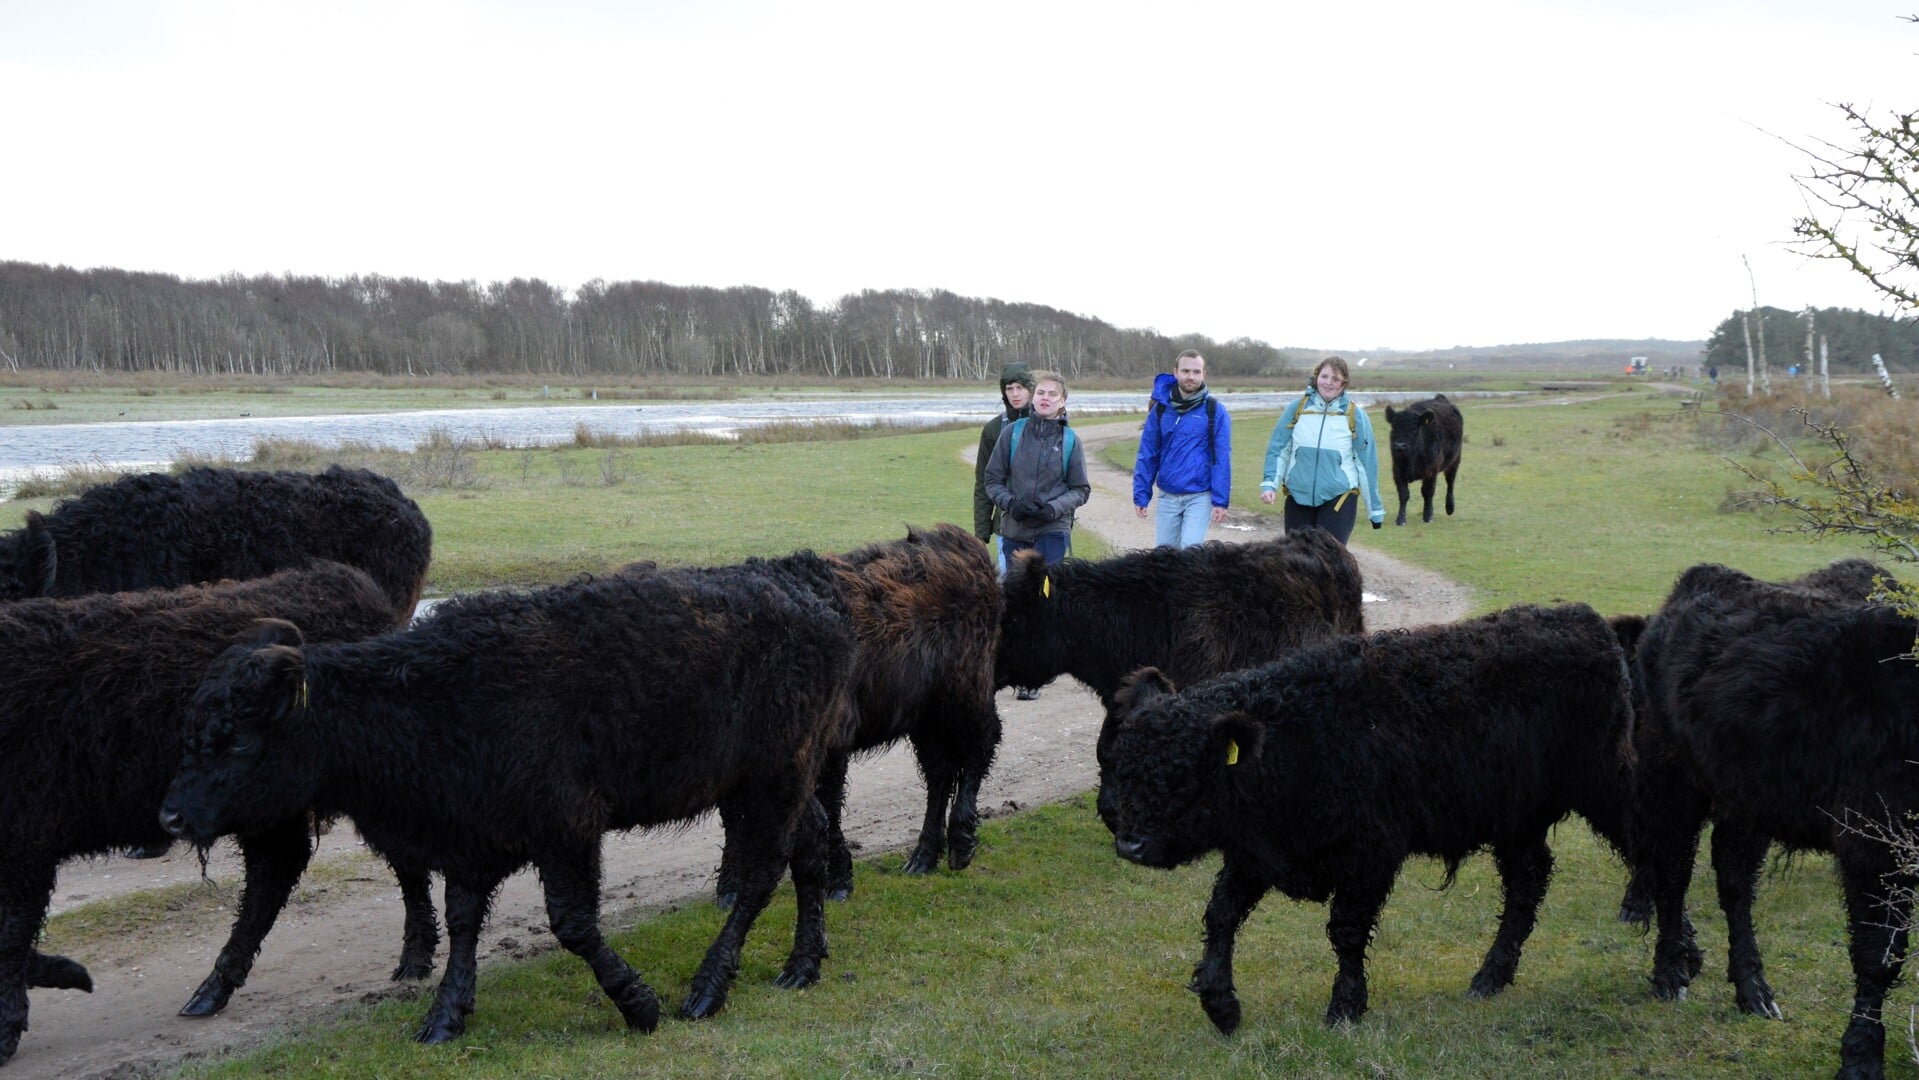 Deelnemers aan de Wandelronde om Texel krijgen in De Muy een escorte van Galloway-runderen.